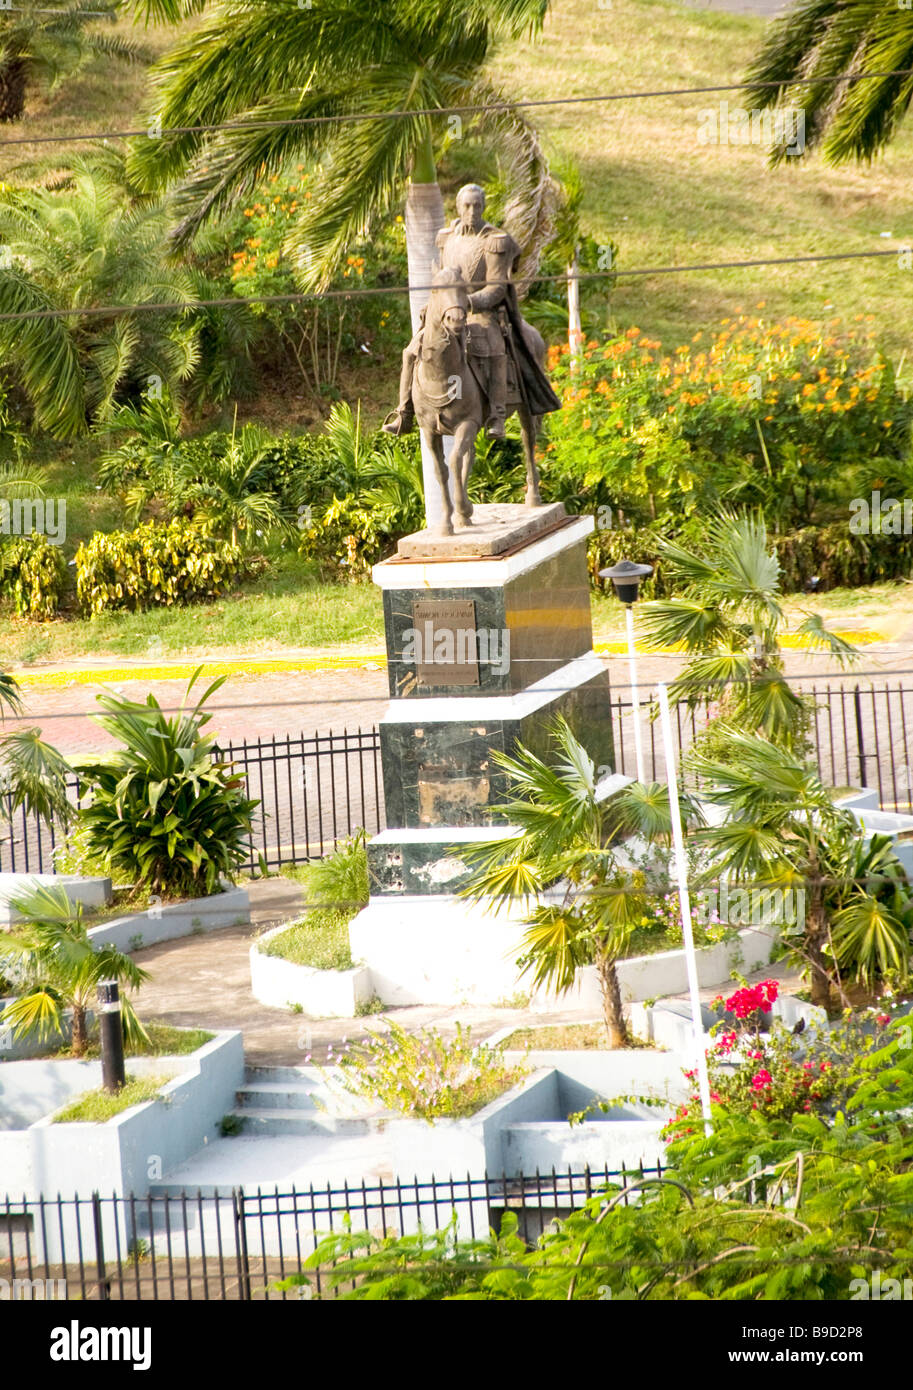 statue Simon Bolivar plaza de la republica Managua Nicaragua central america Stock Photo